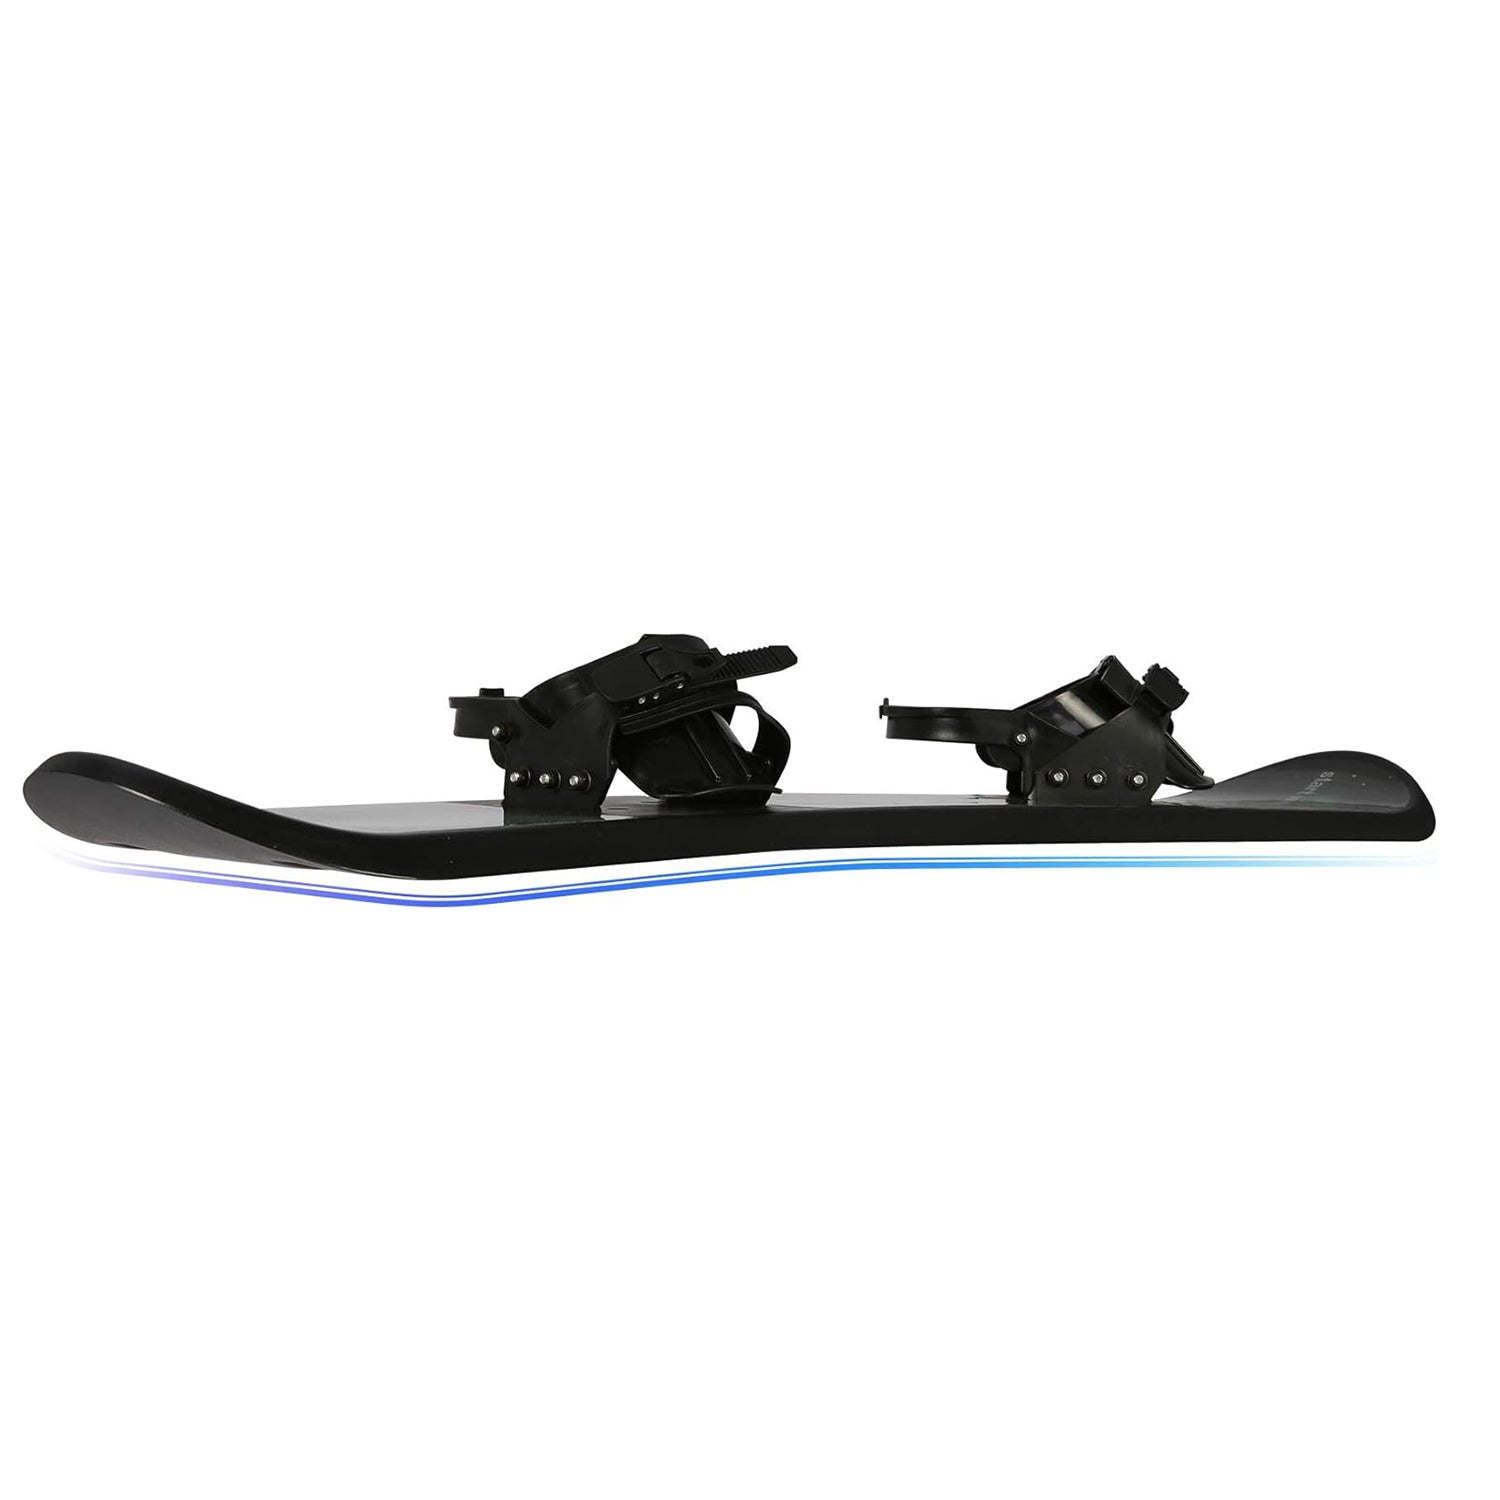 Snowboard for Kids Beginners - 43.3" Adjustable Step-in Bindings Winter Sport Ski Snow Board